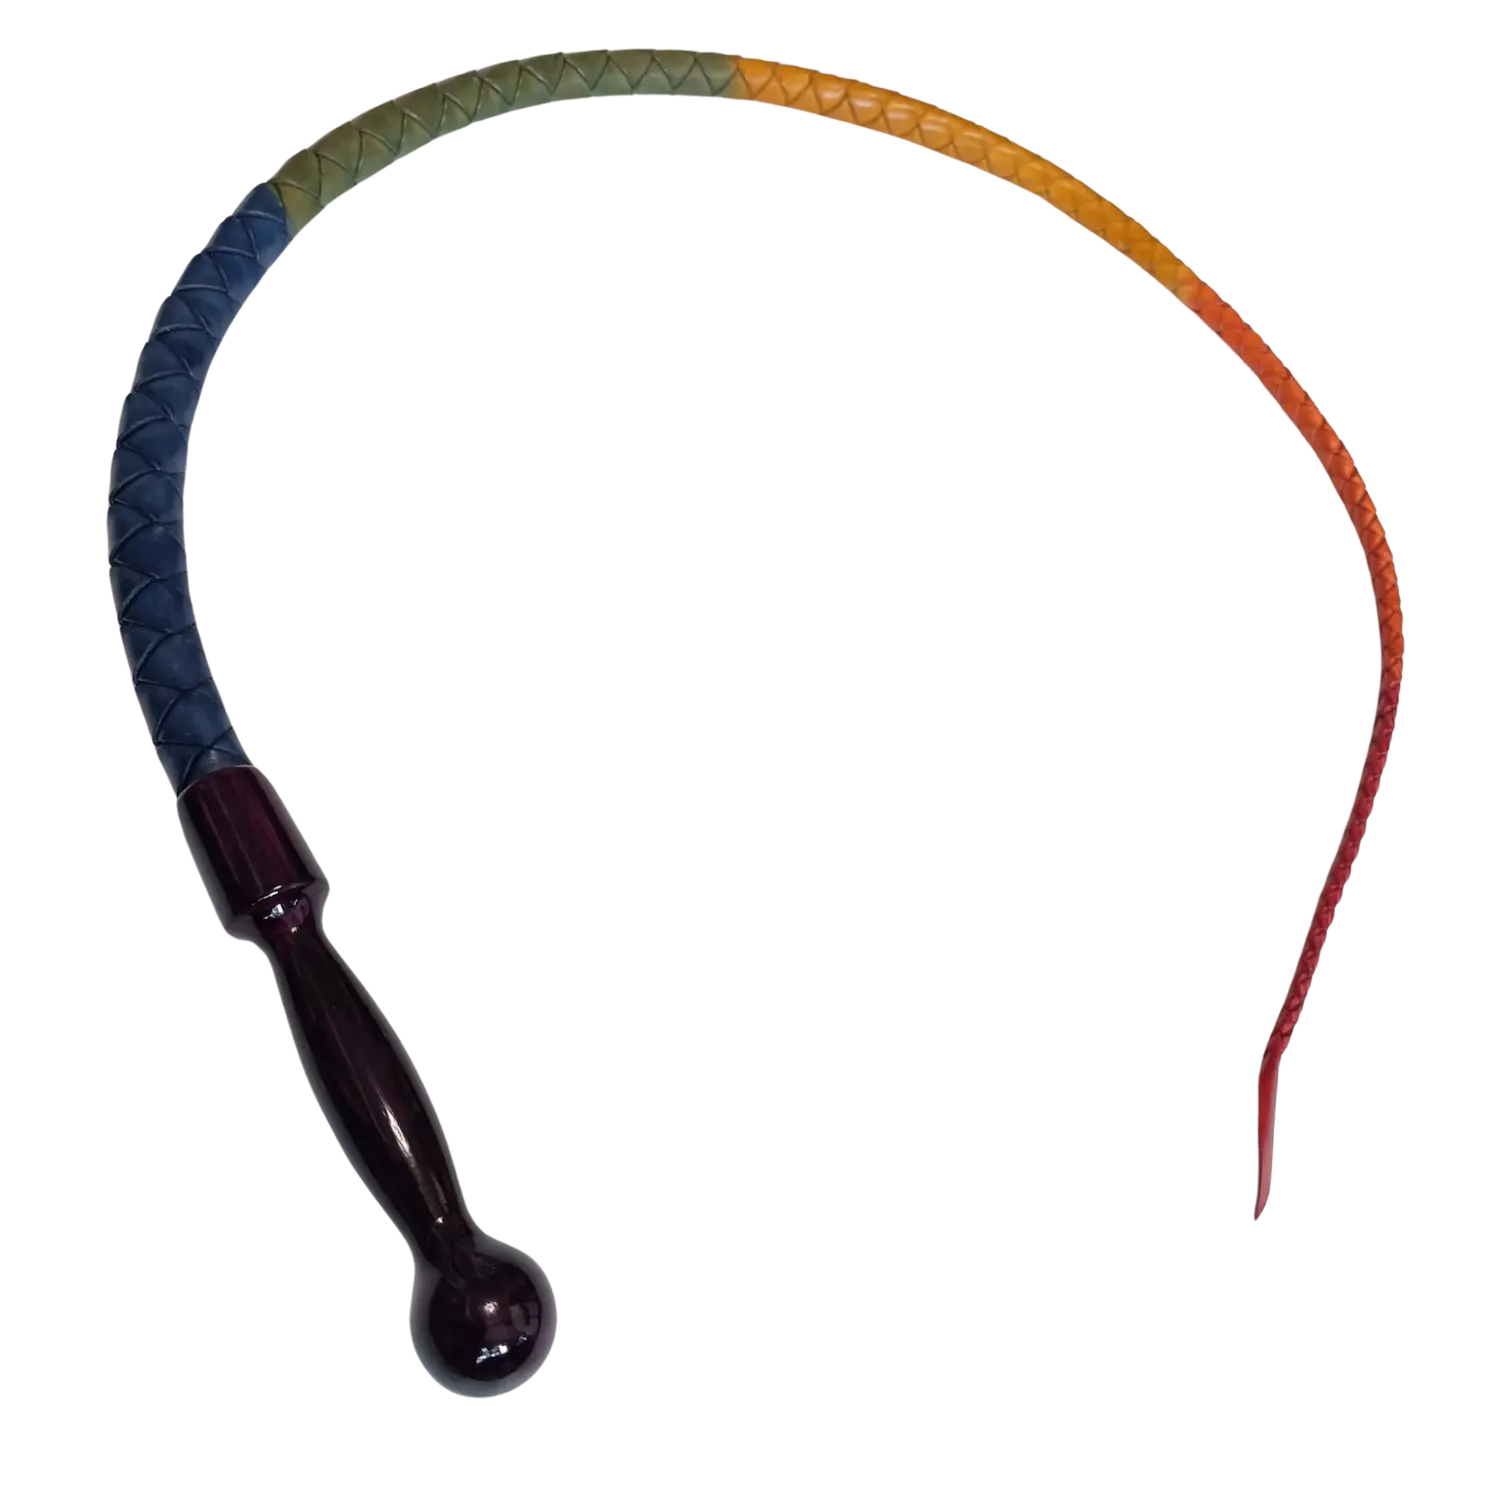 Krátký duhový bič z ručně barvené kůže ve fialové dřevěné rukojeti. Cena 3400 Kč